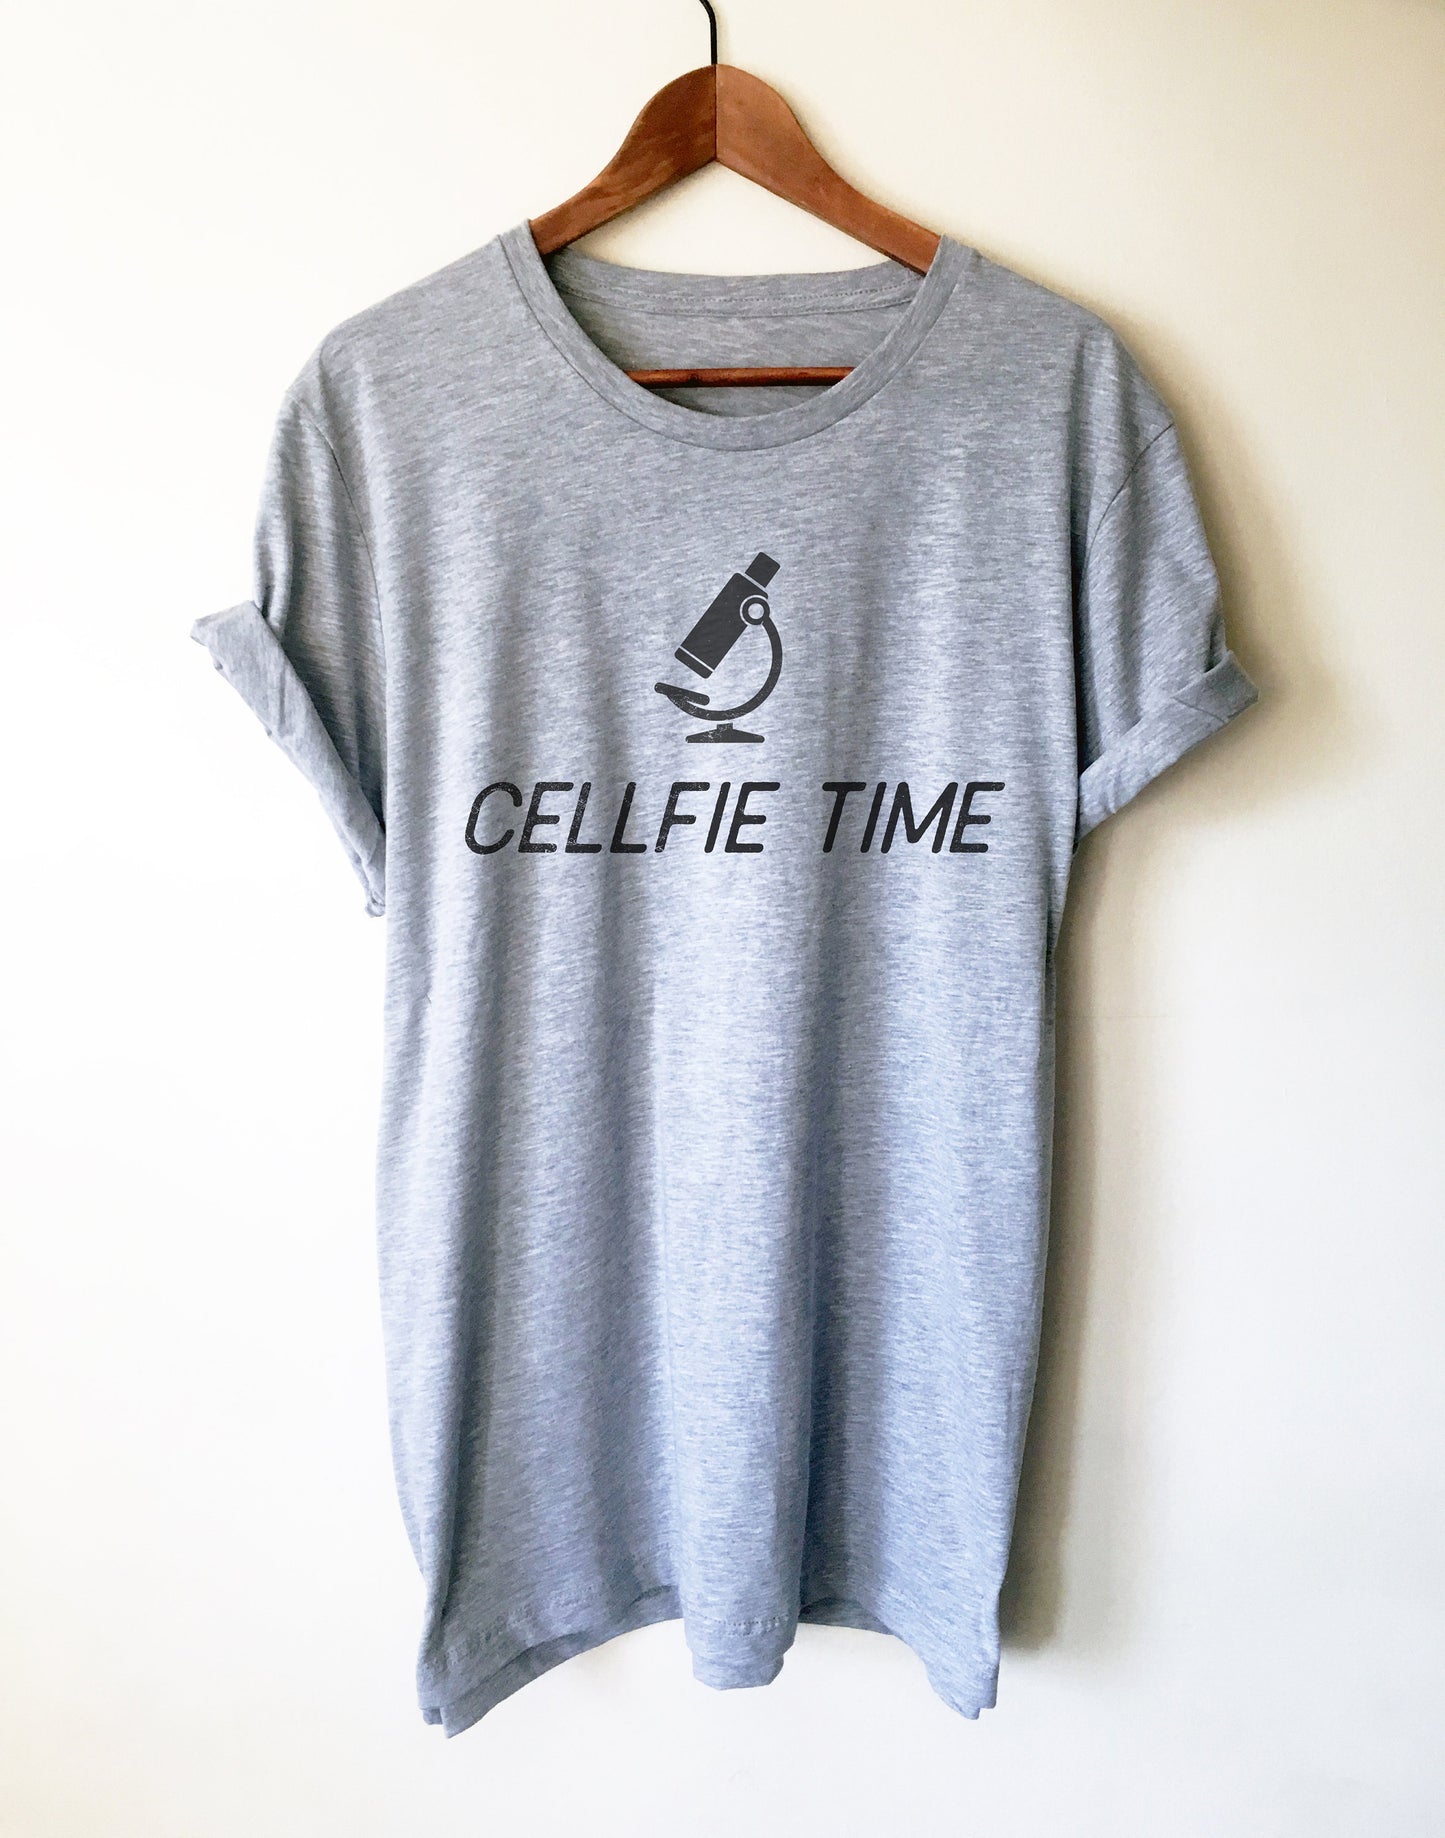 Cellfie Time Unisex Shirt - Microbiologist Shirt, Lab Tech Shirt, Technician Shirt, Science Shirt, Scientist Shirt, Science Gift, Lab Shirt